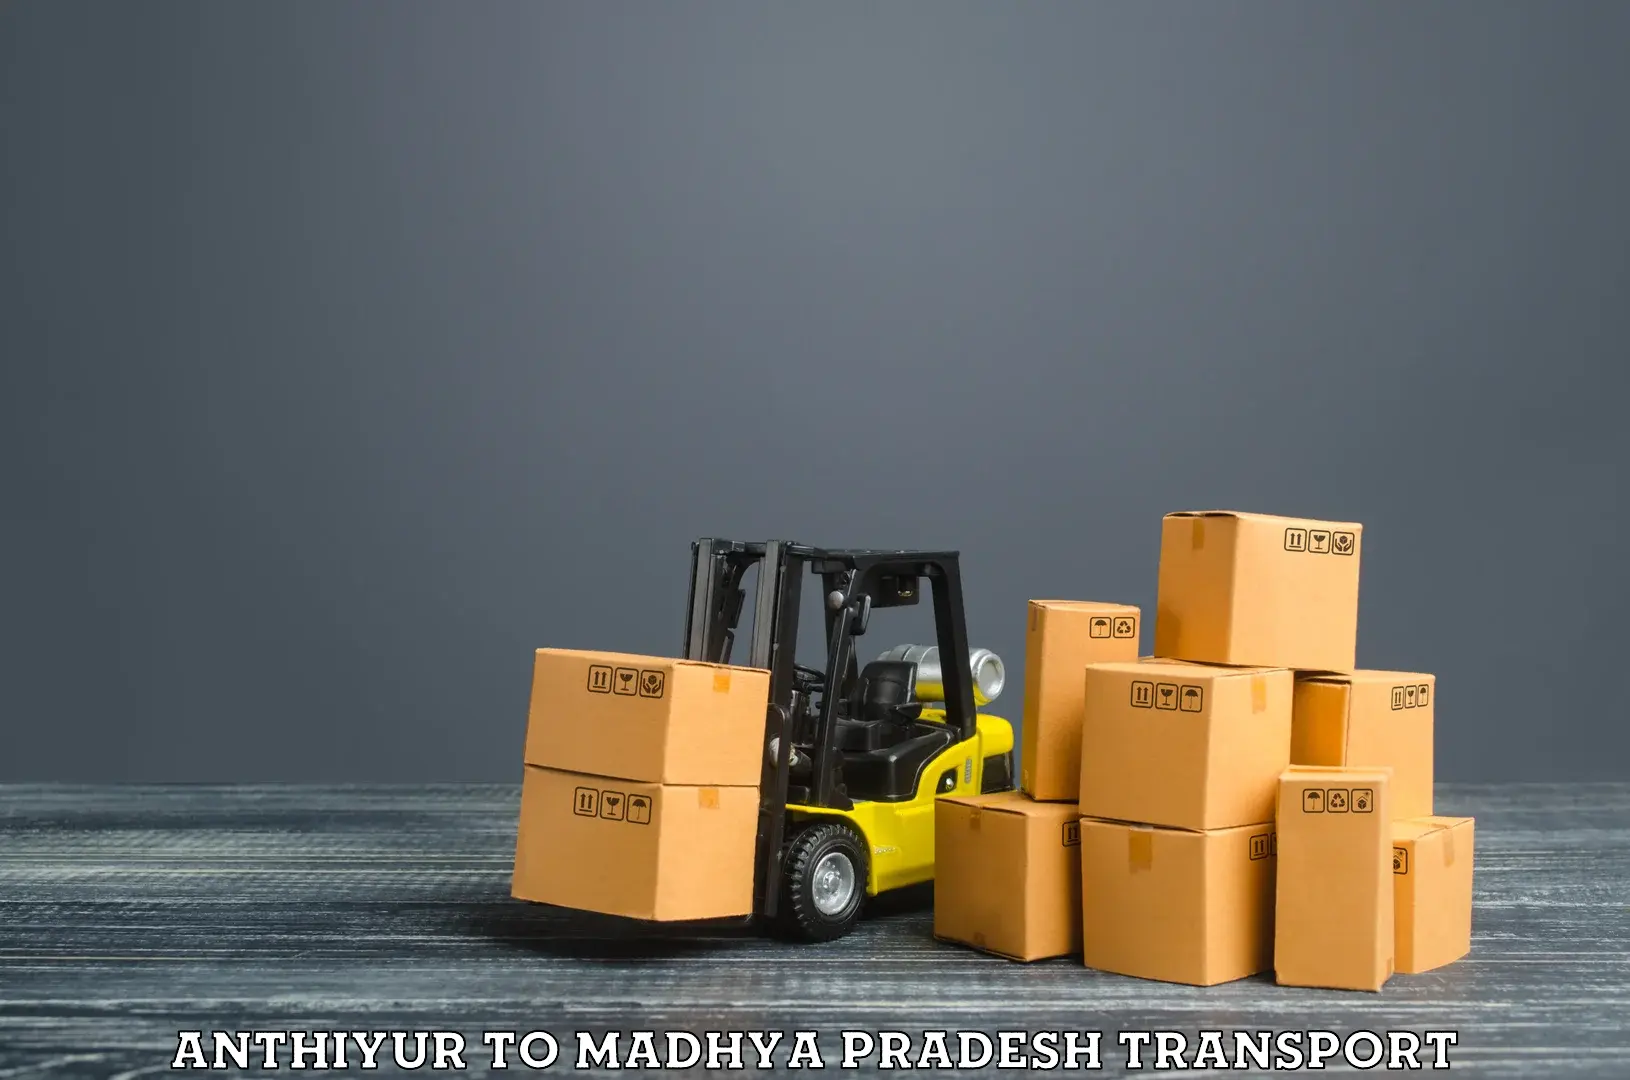 Lorry transport service Anthiyur to Rampur Naikin